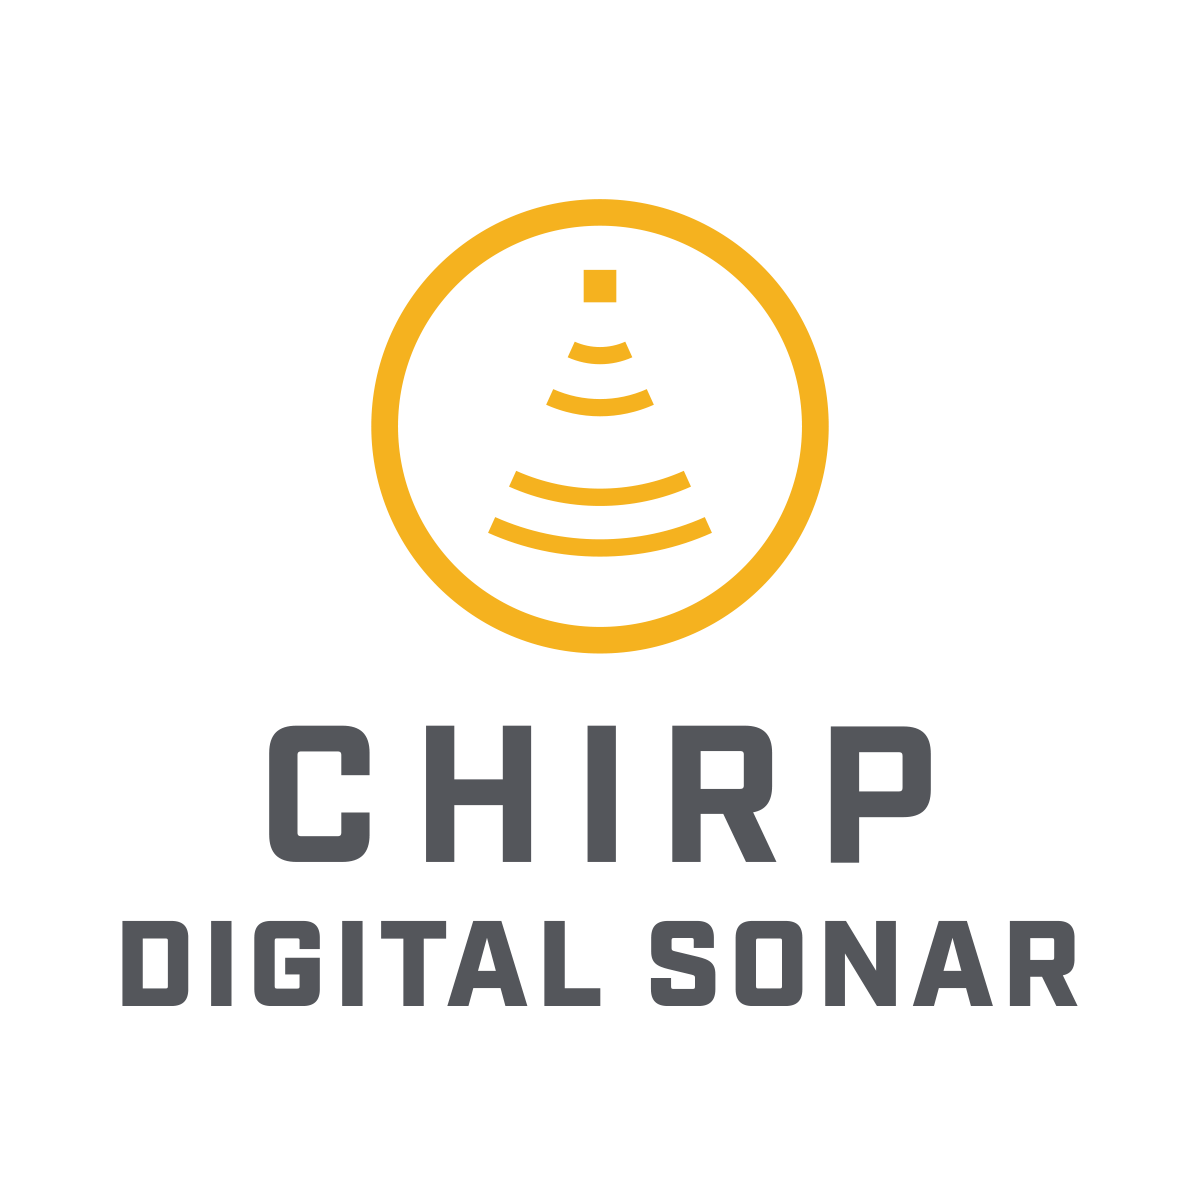 CHIRP Digital Sonar